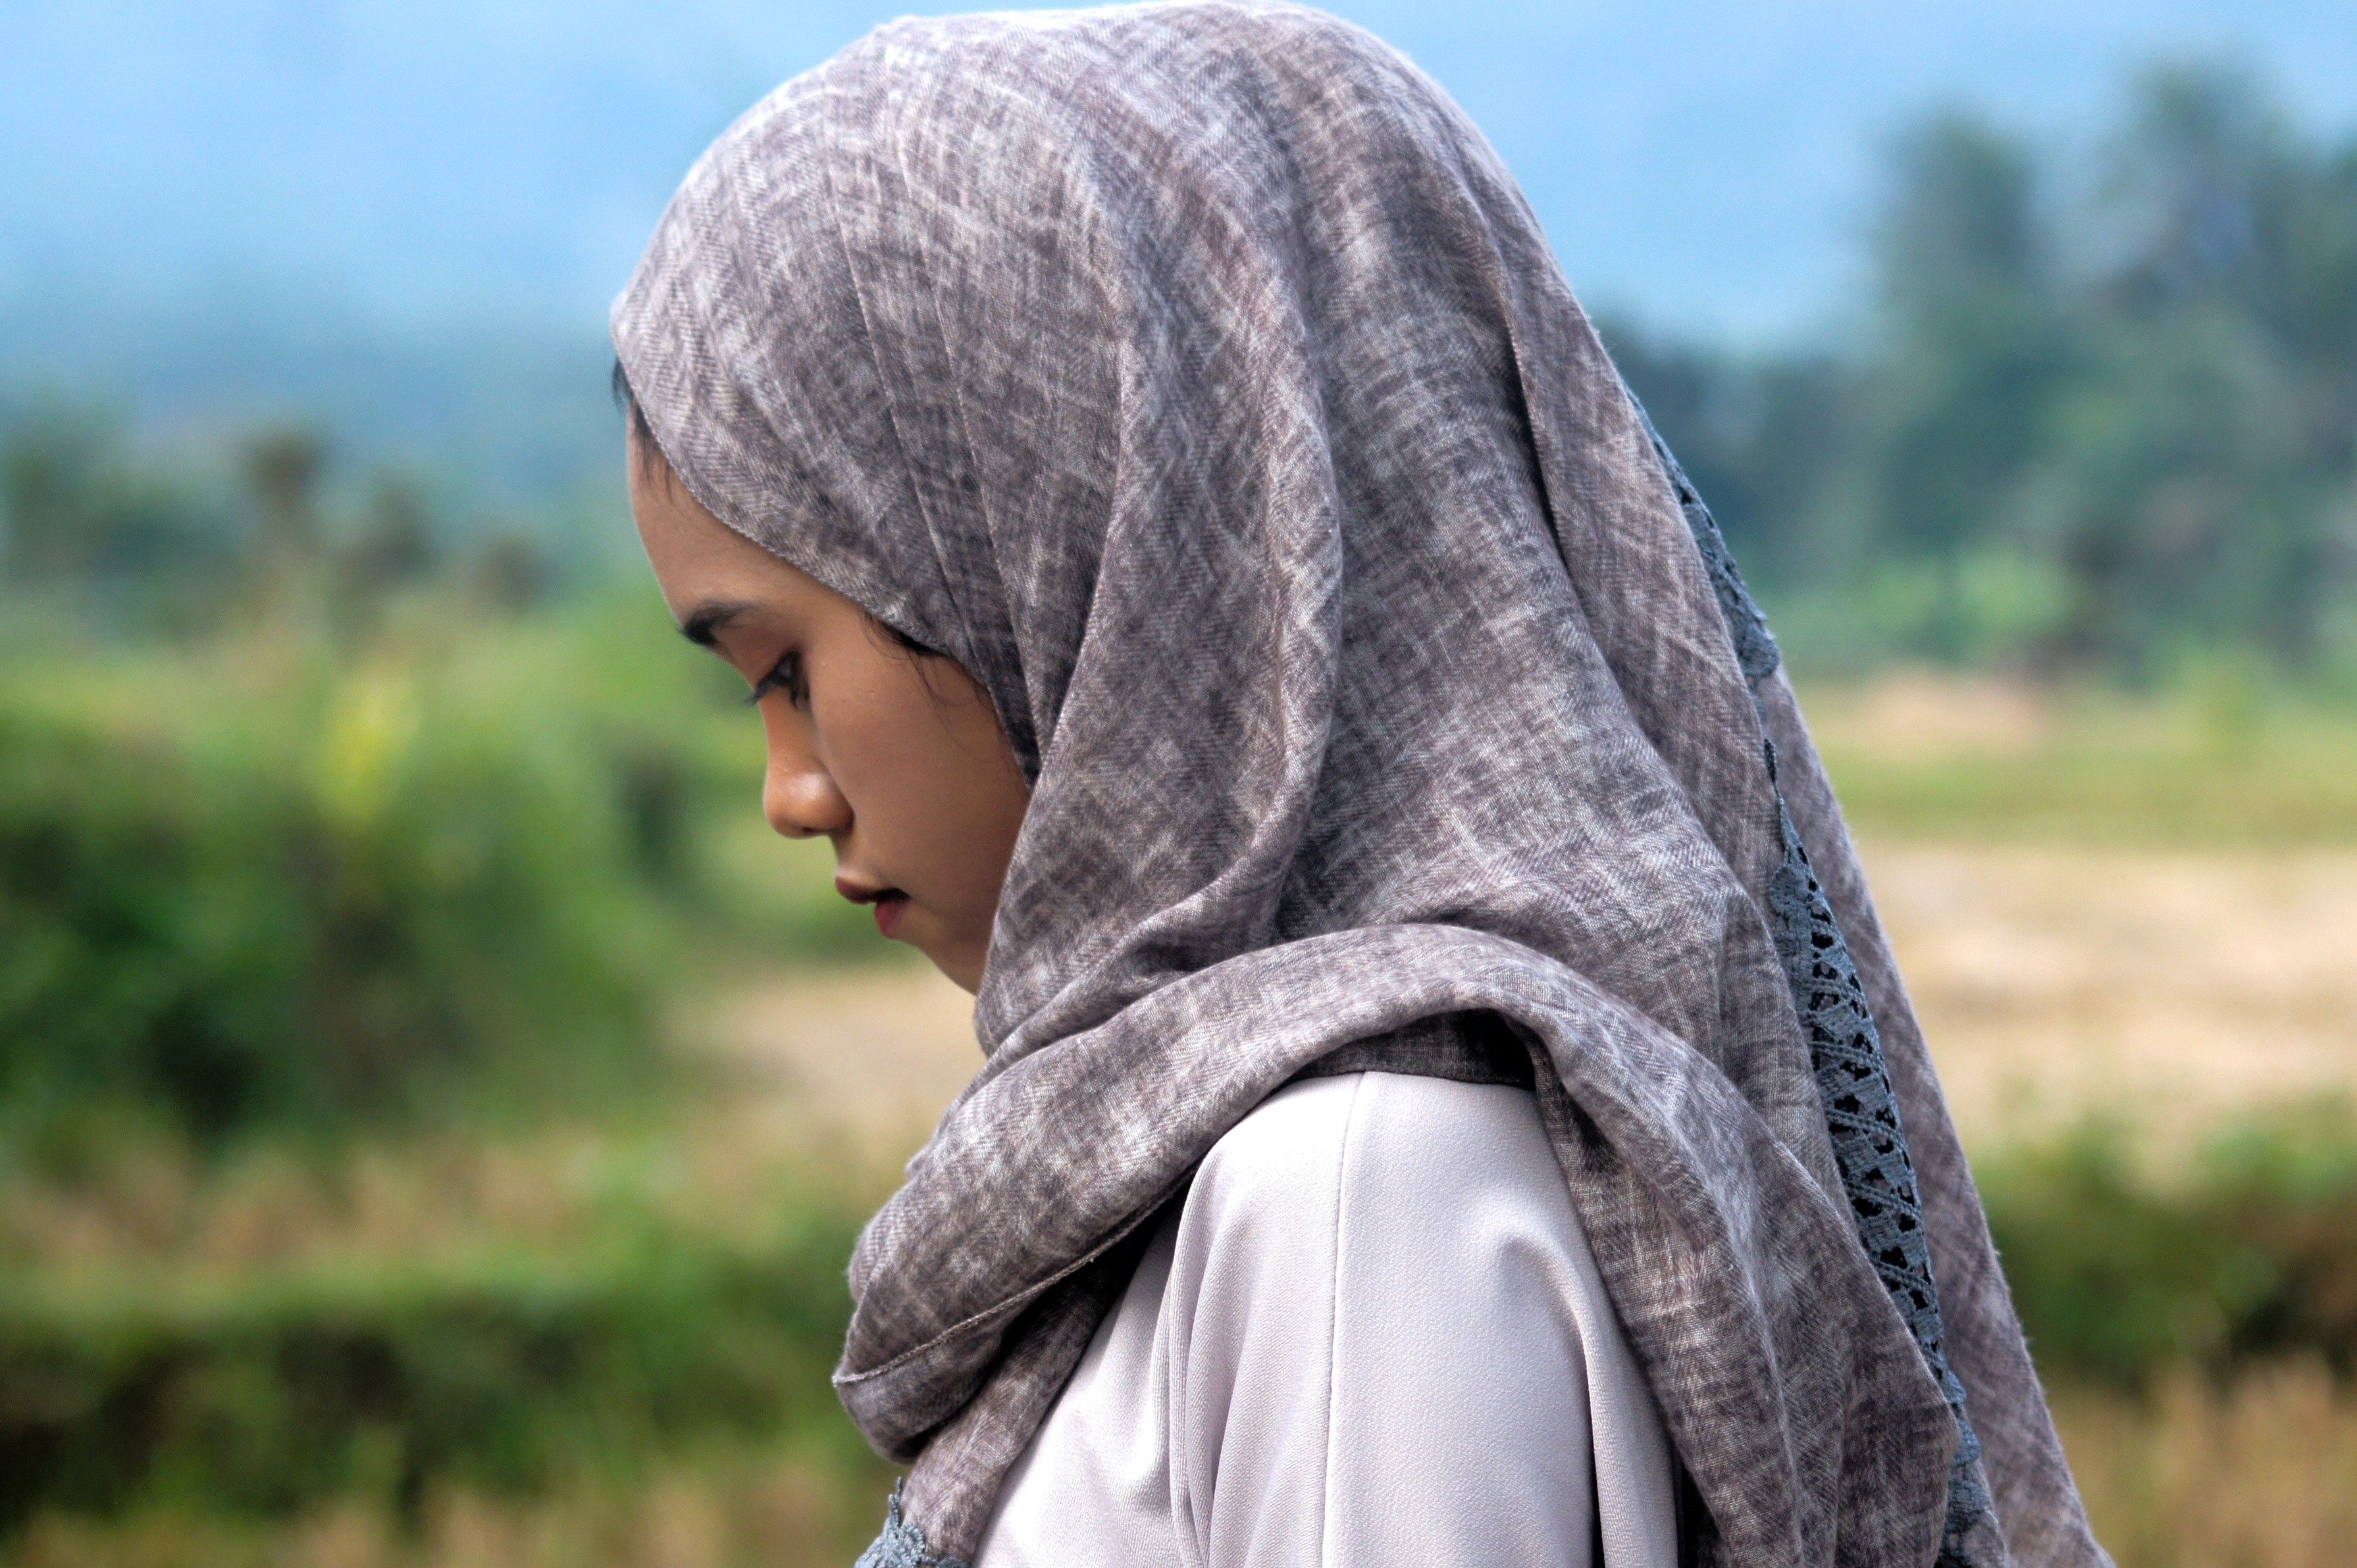 Jente i begynnelsen av tenårene med hijab ser nedstemt ut.